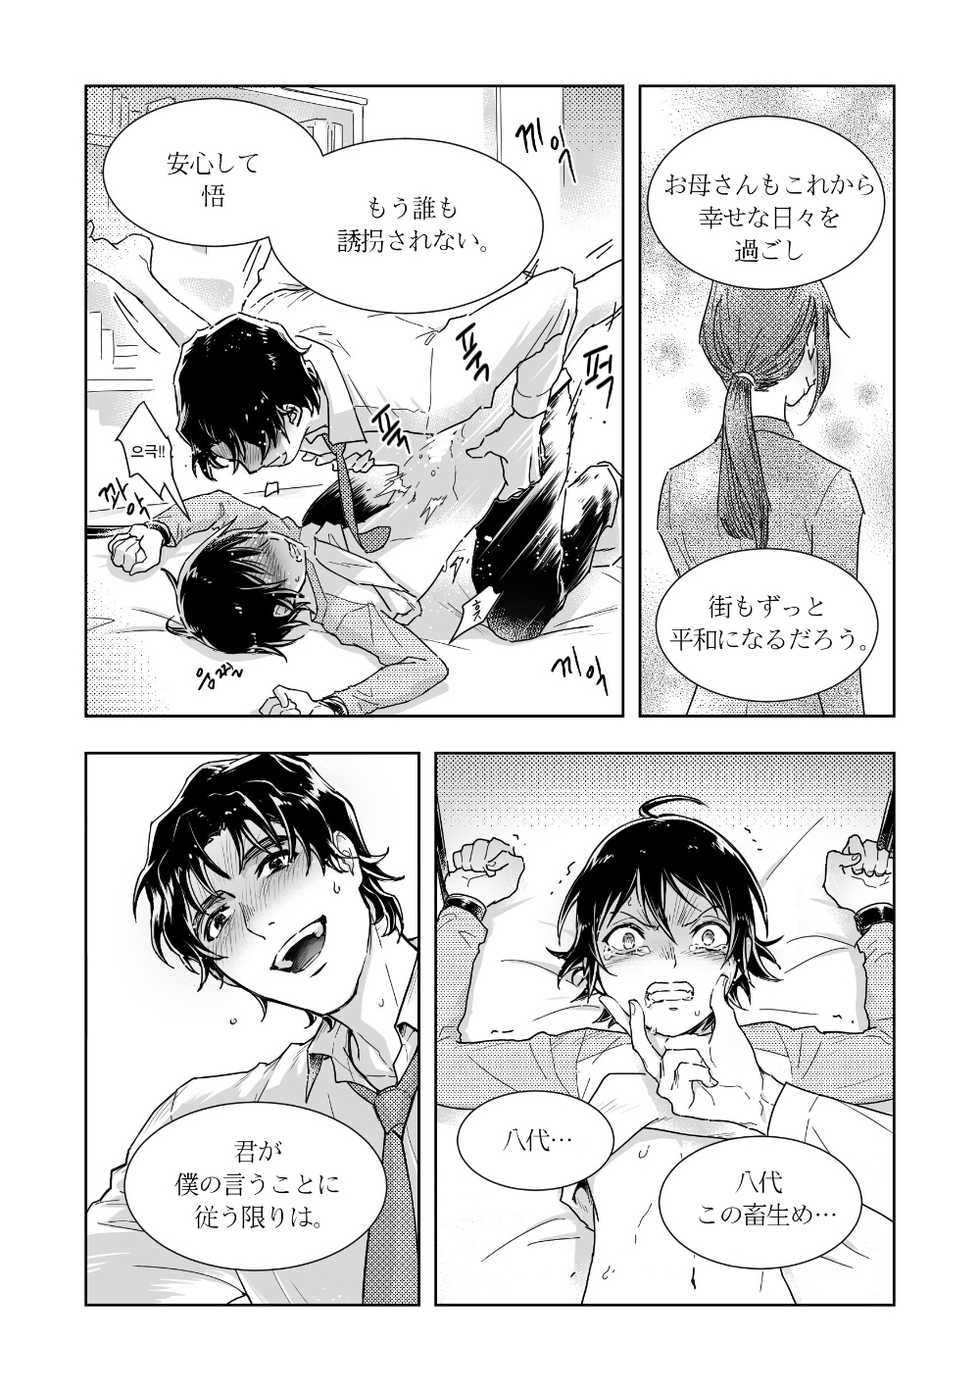 [butcher_shop] YashiSato Manga (Boku Dake ga Inai Machi) - Page 20